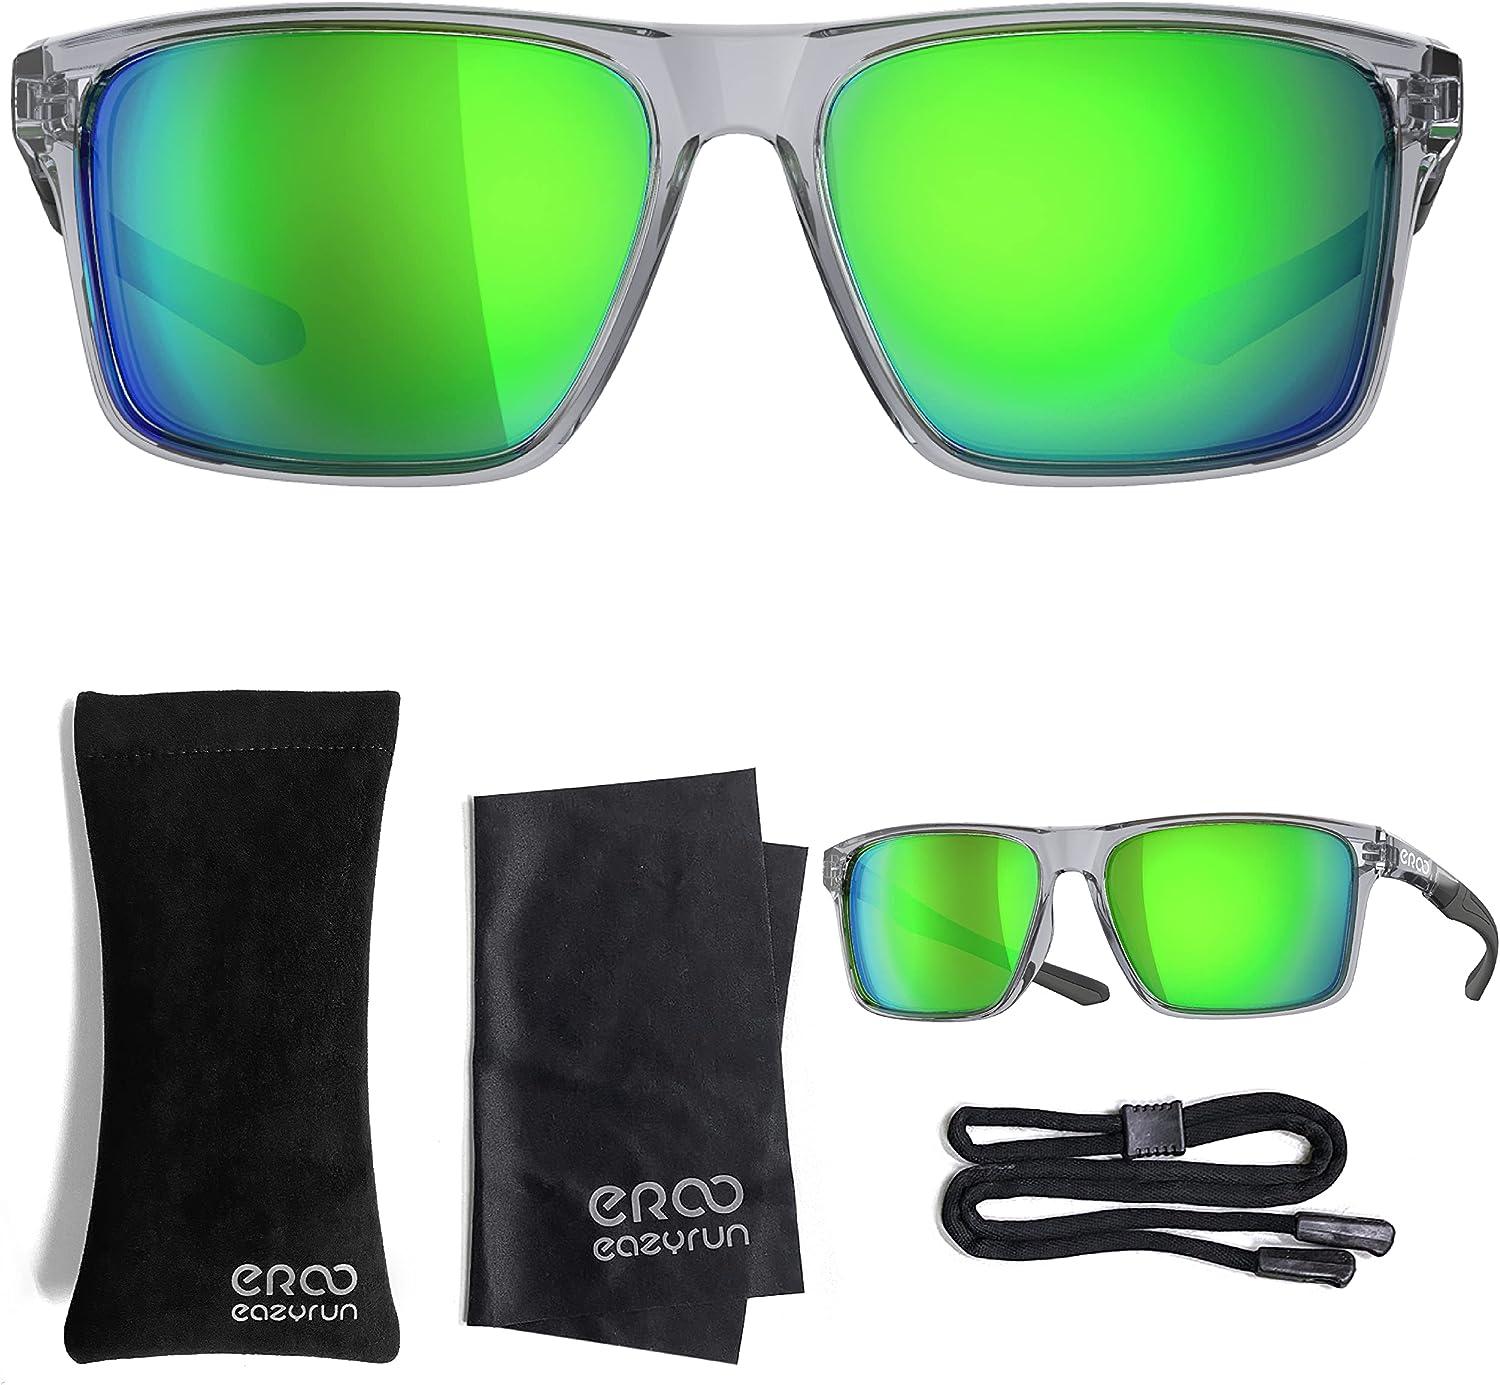 EAZYRUN HD Polarized Sunglasses for Women & Men, for Running